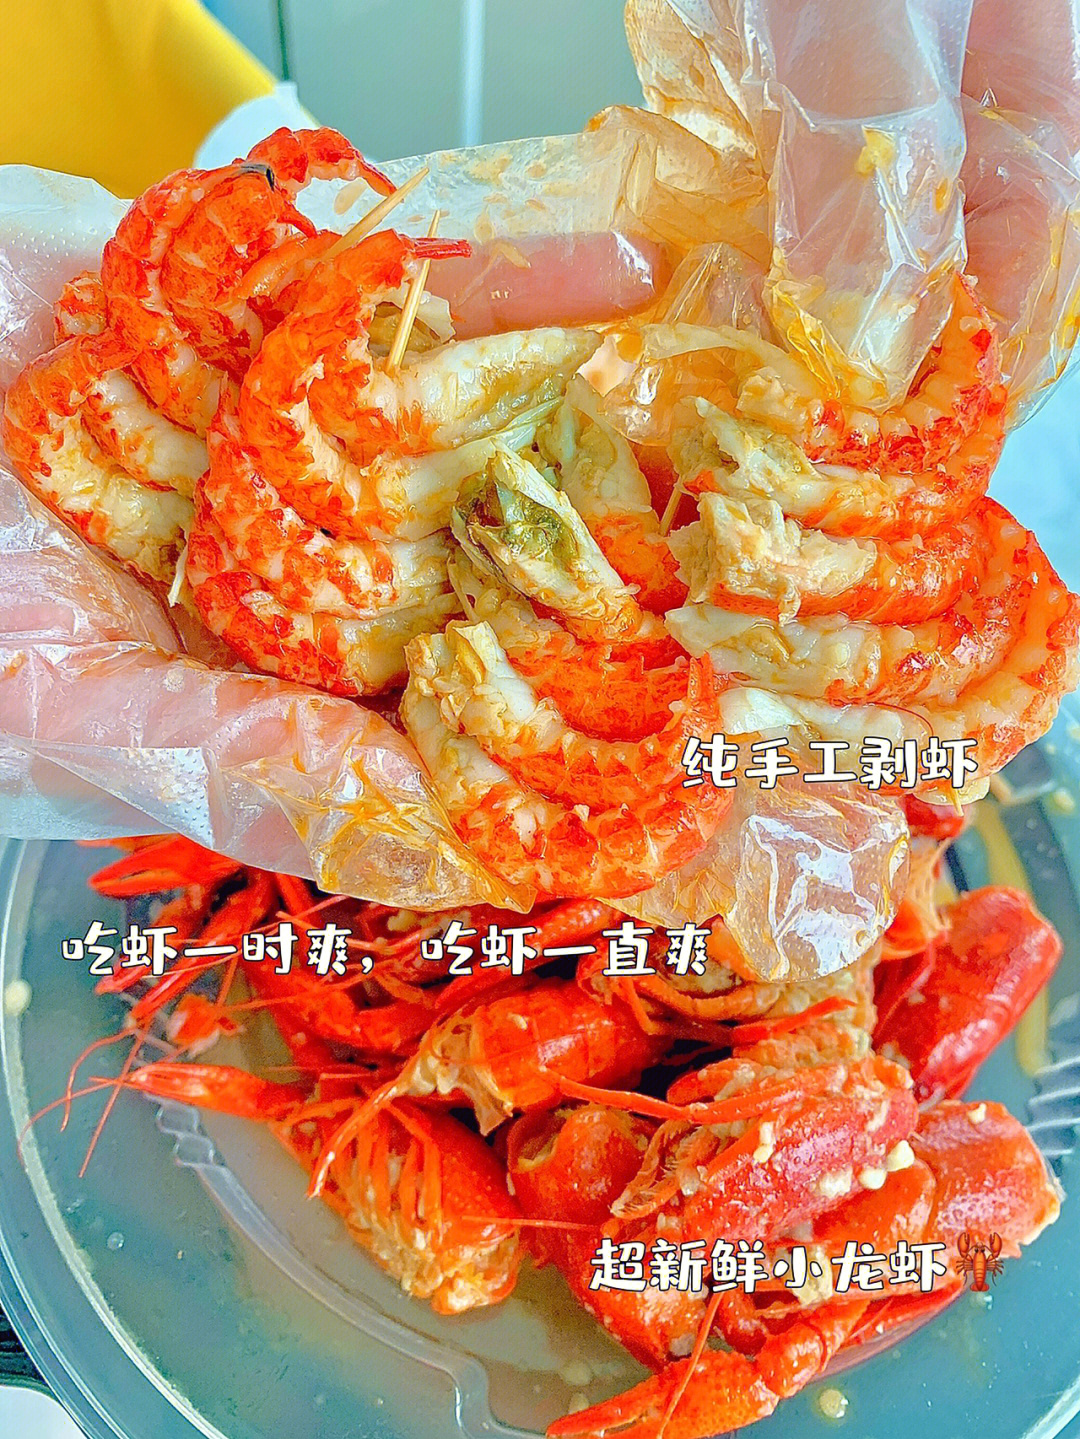 昆明狂炫三斤盒马鲜生的小龙虾02